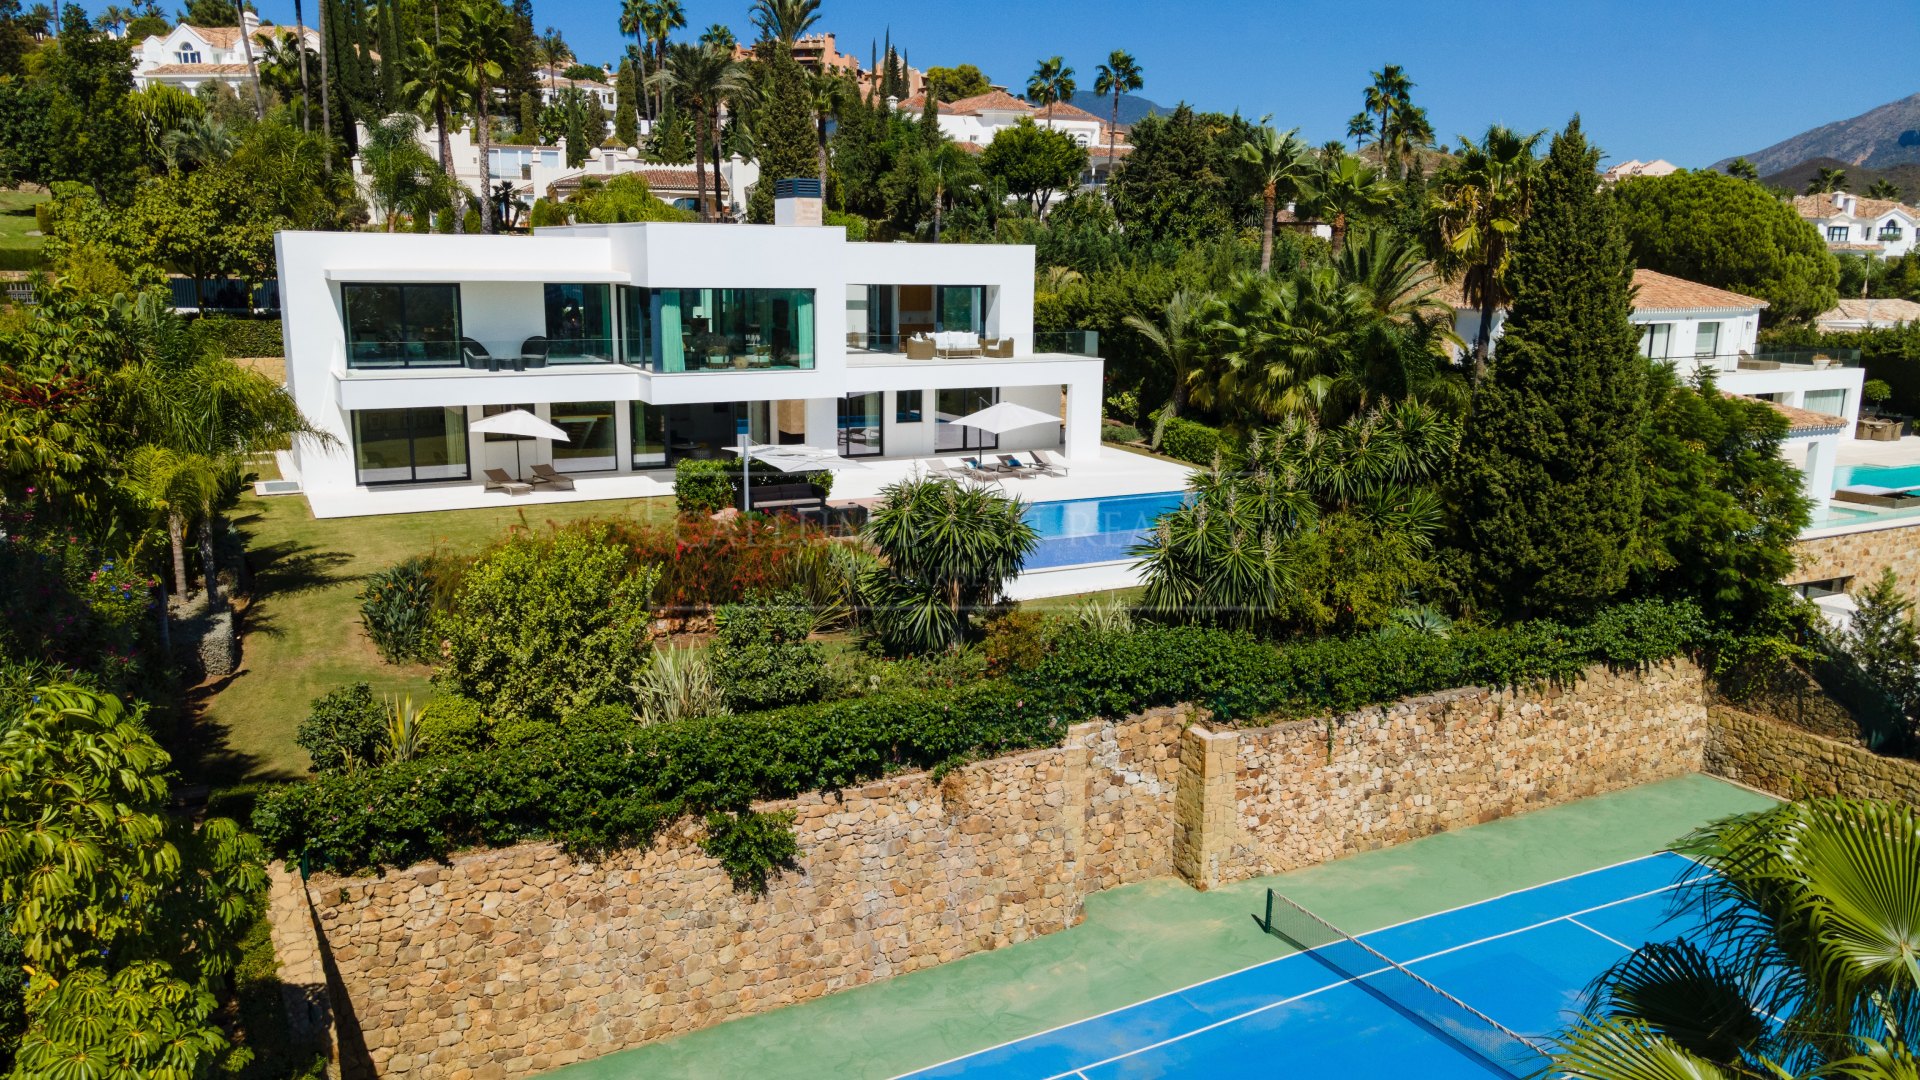 La Cerquilla: luxury villa for sale with a private tennis court